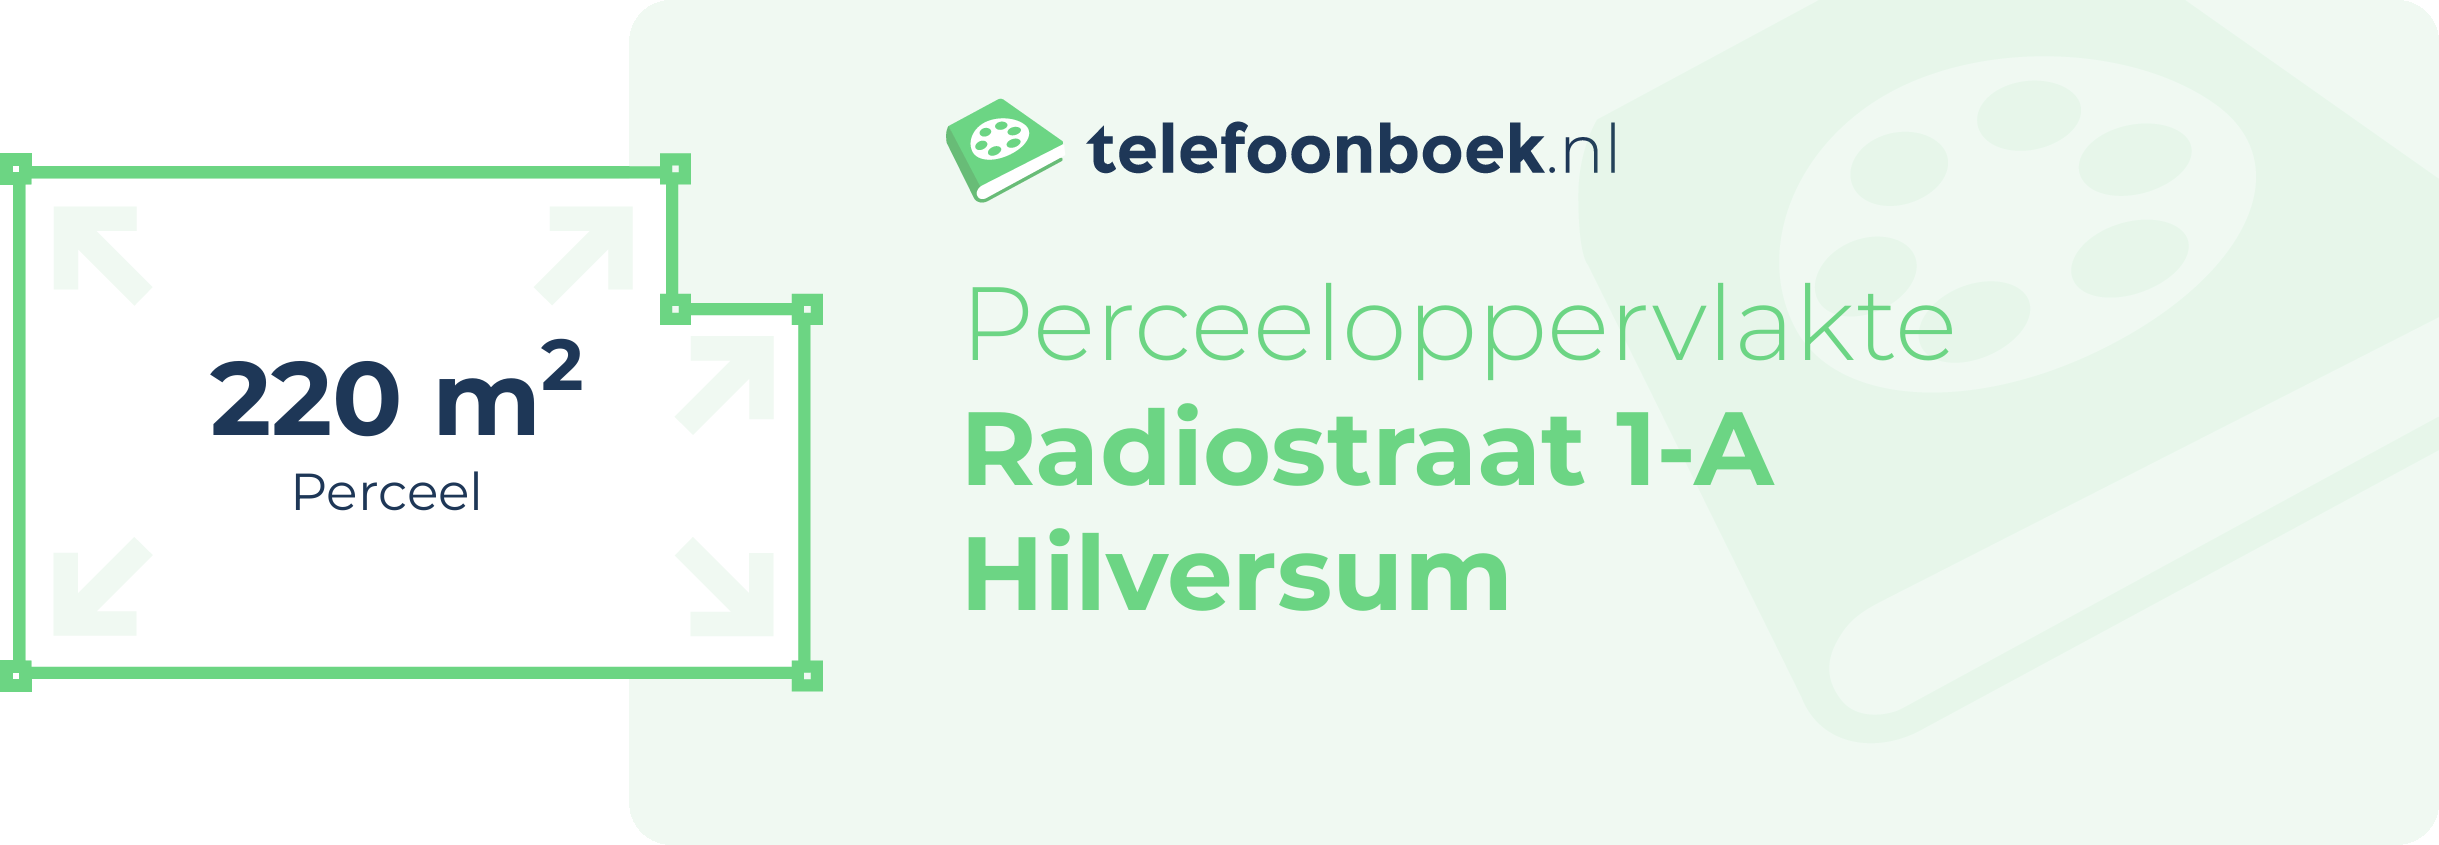 Perceeloppervlakte Radiostraat 1-A Hilversum